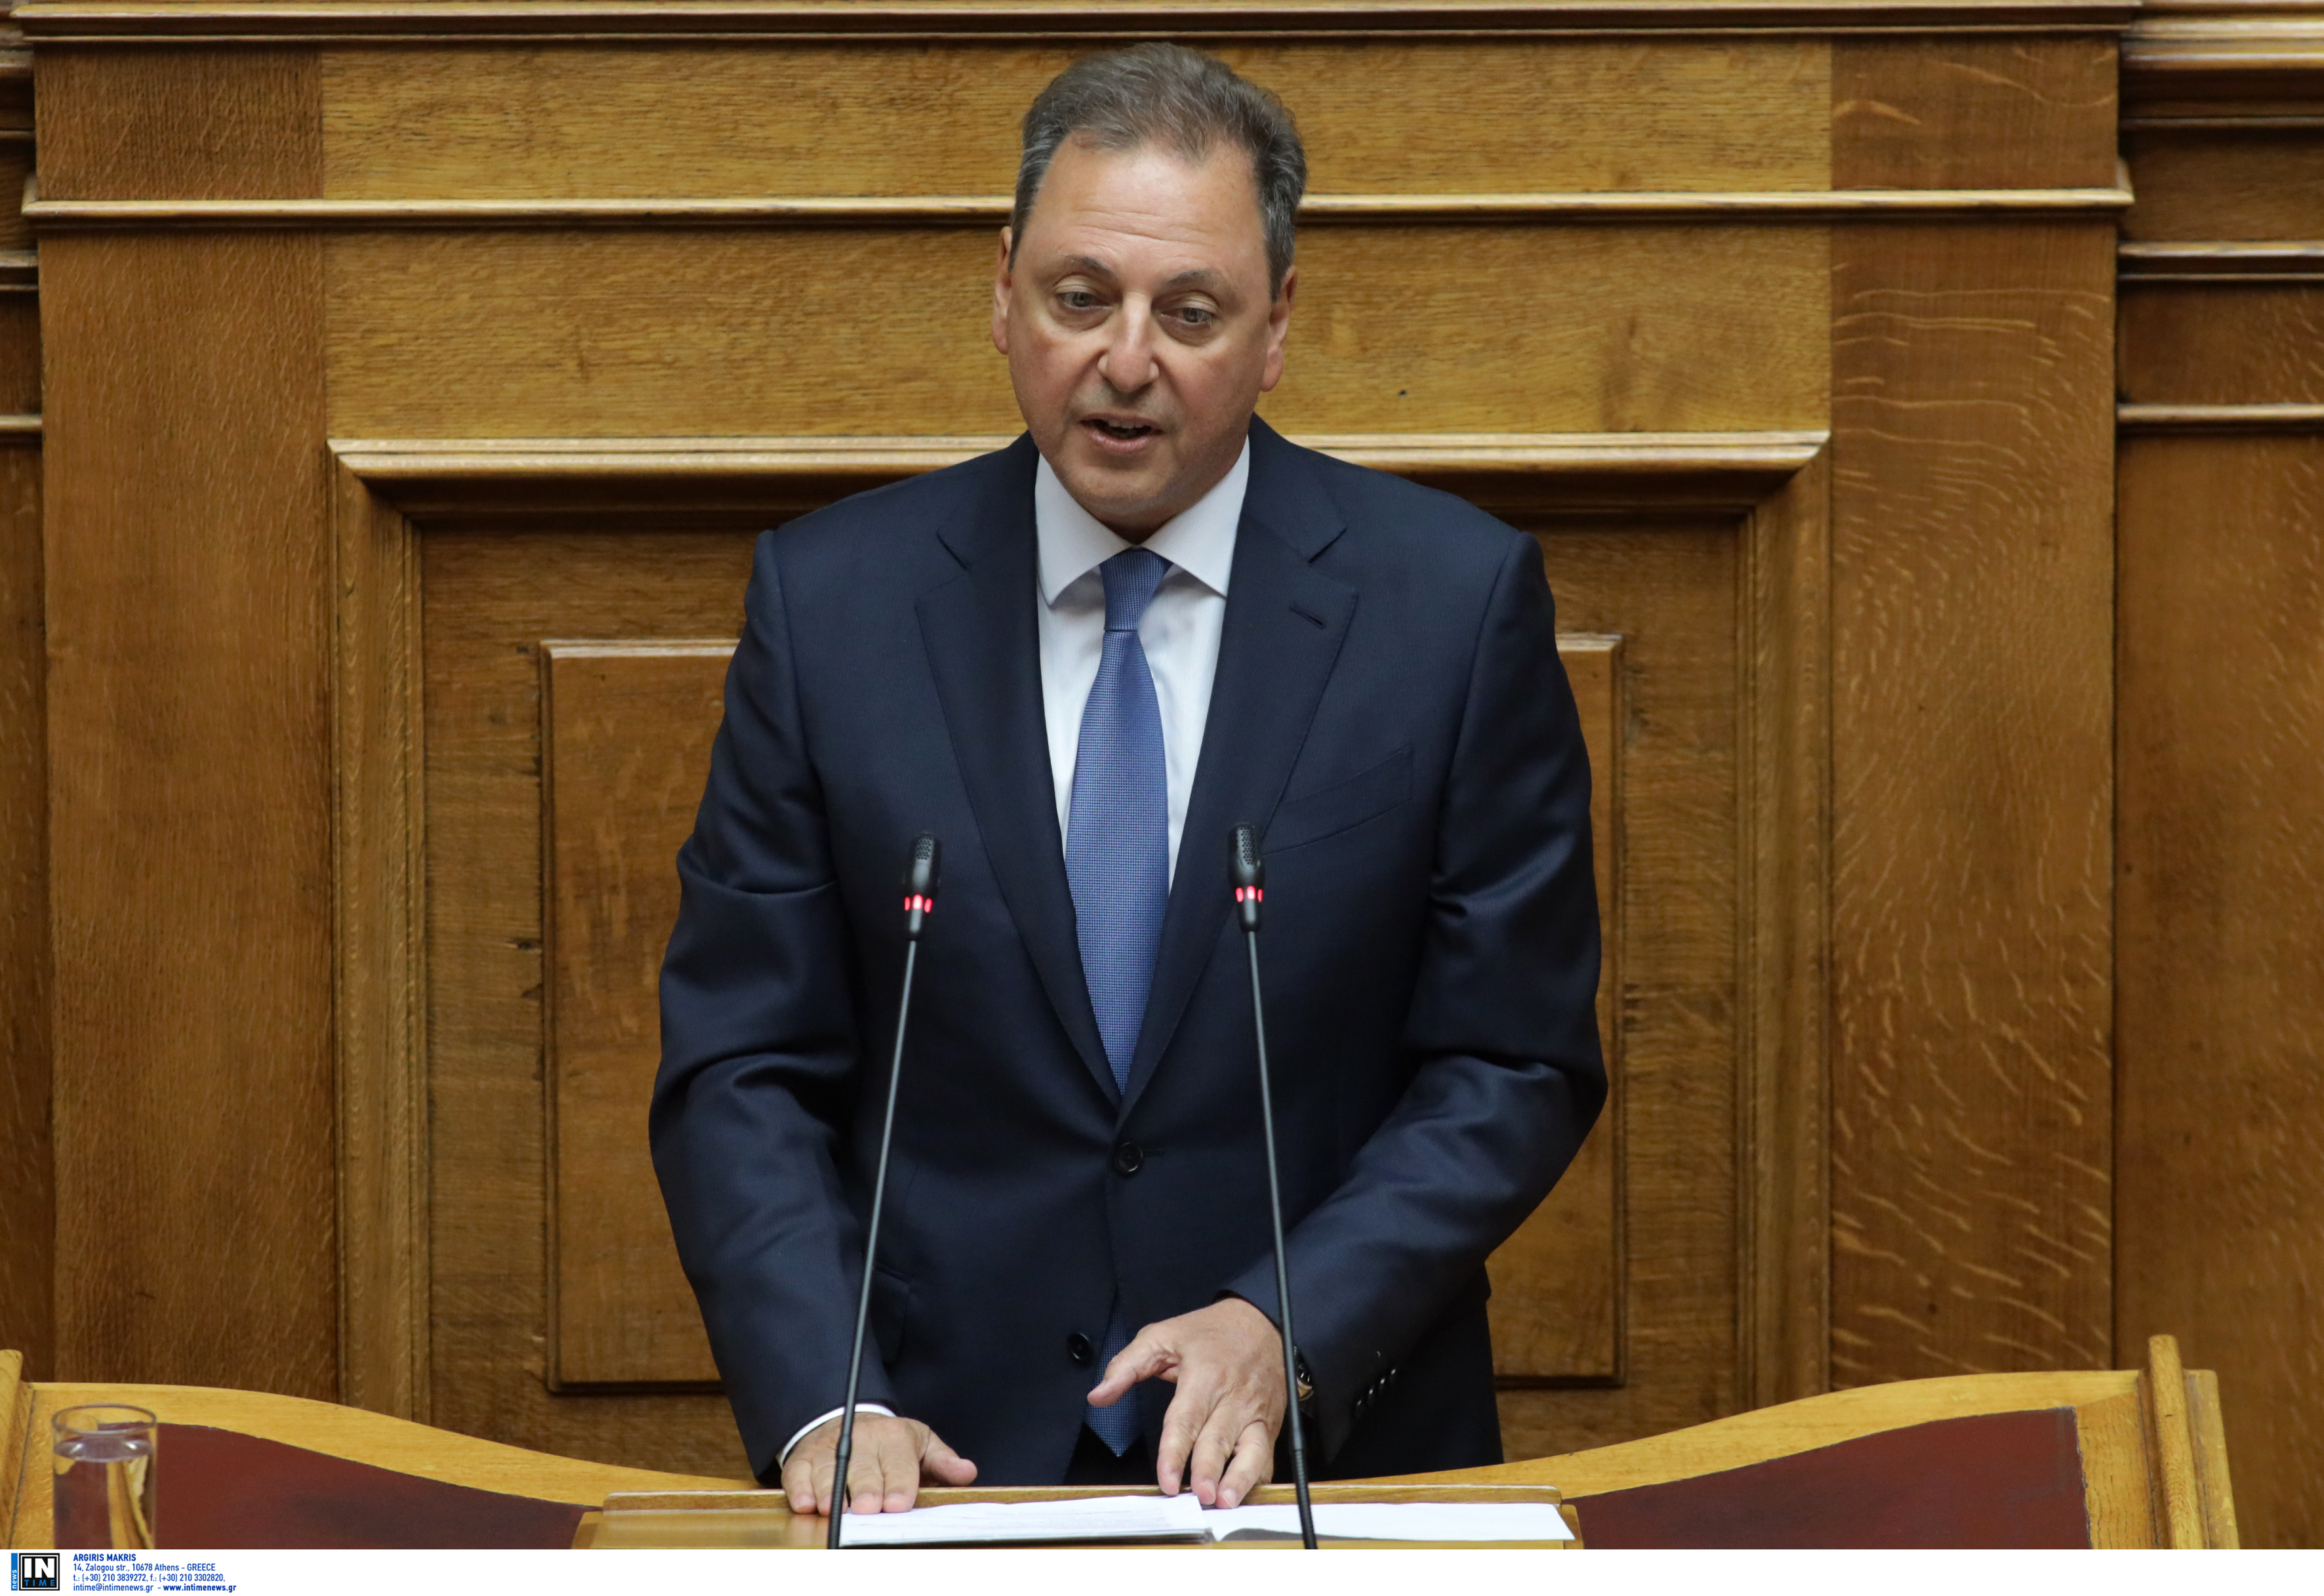 Νέος κοινοβουλευτικός εκπρόσωπος της ΝΔ ο Σπήλιος Λιβανός